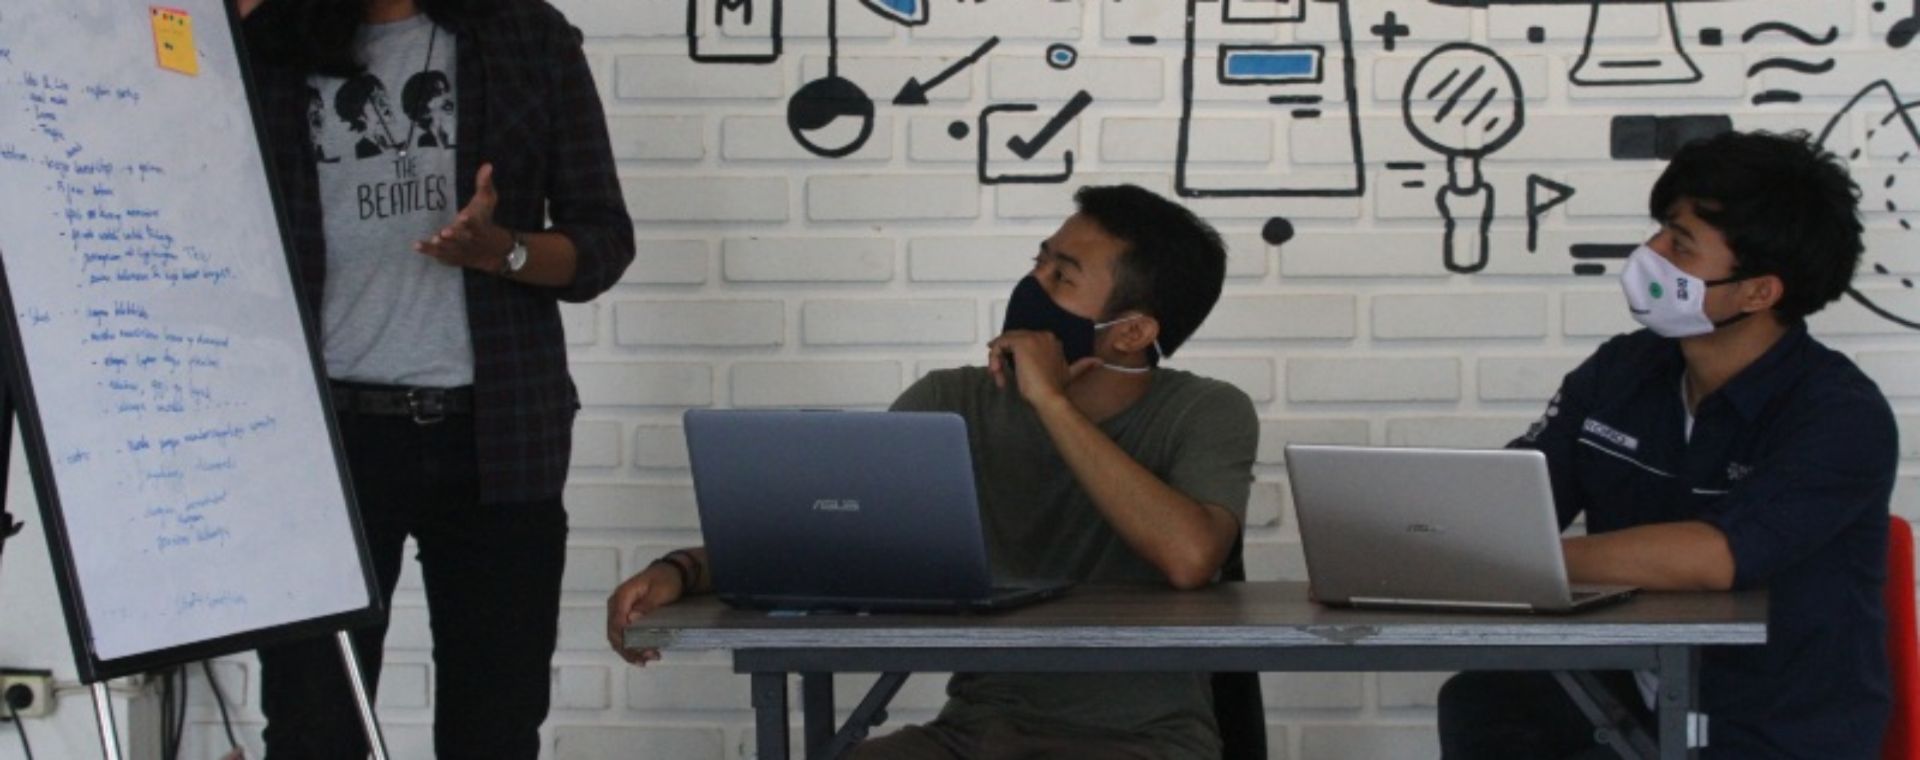 Pengelola perusahaan rintisan digital atau startup mengoperasikan program pelayanan di sebuah kantor bersama berbasis jaringan internet (Coworking space) Ngalup.Co di Malang, Jawa Timur, Senin (12/10/2020). /ANTARA FOTO-Ari Bowo Sucipto